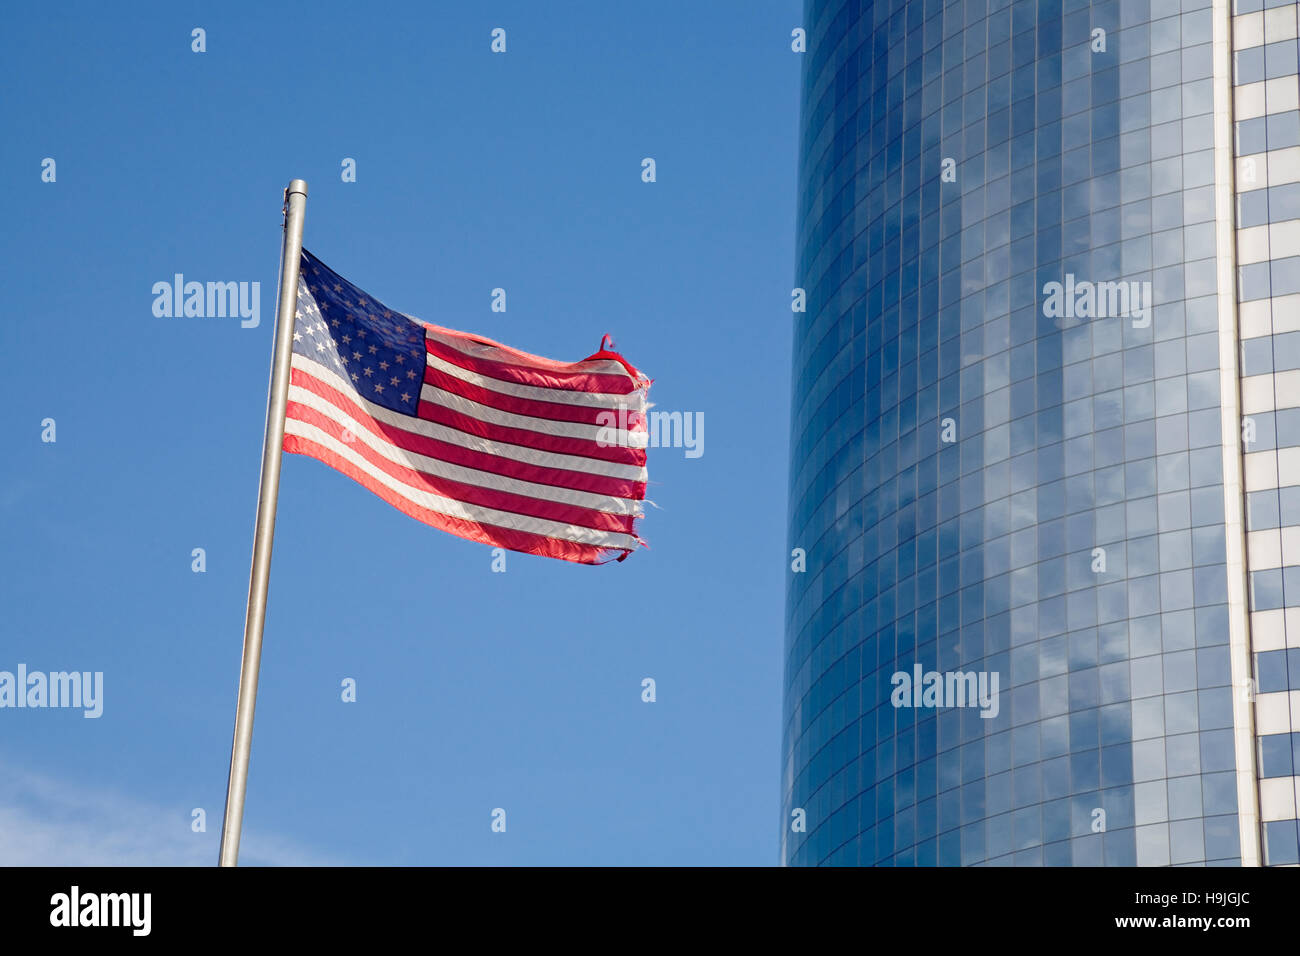 Ondea la bandera de las barras y estrellas junto a un rascacielos moderno con fachada de cristal en el distrito financiero de Manhattan, en la Ciudad de Nueva York. El desenfoque de la ed Foto de stock